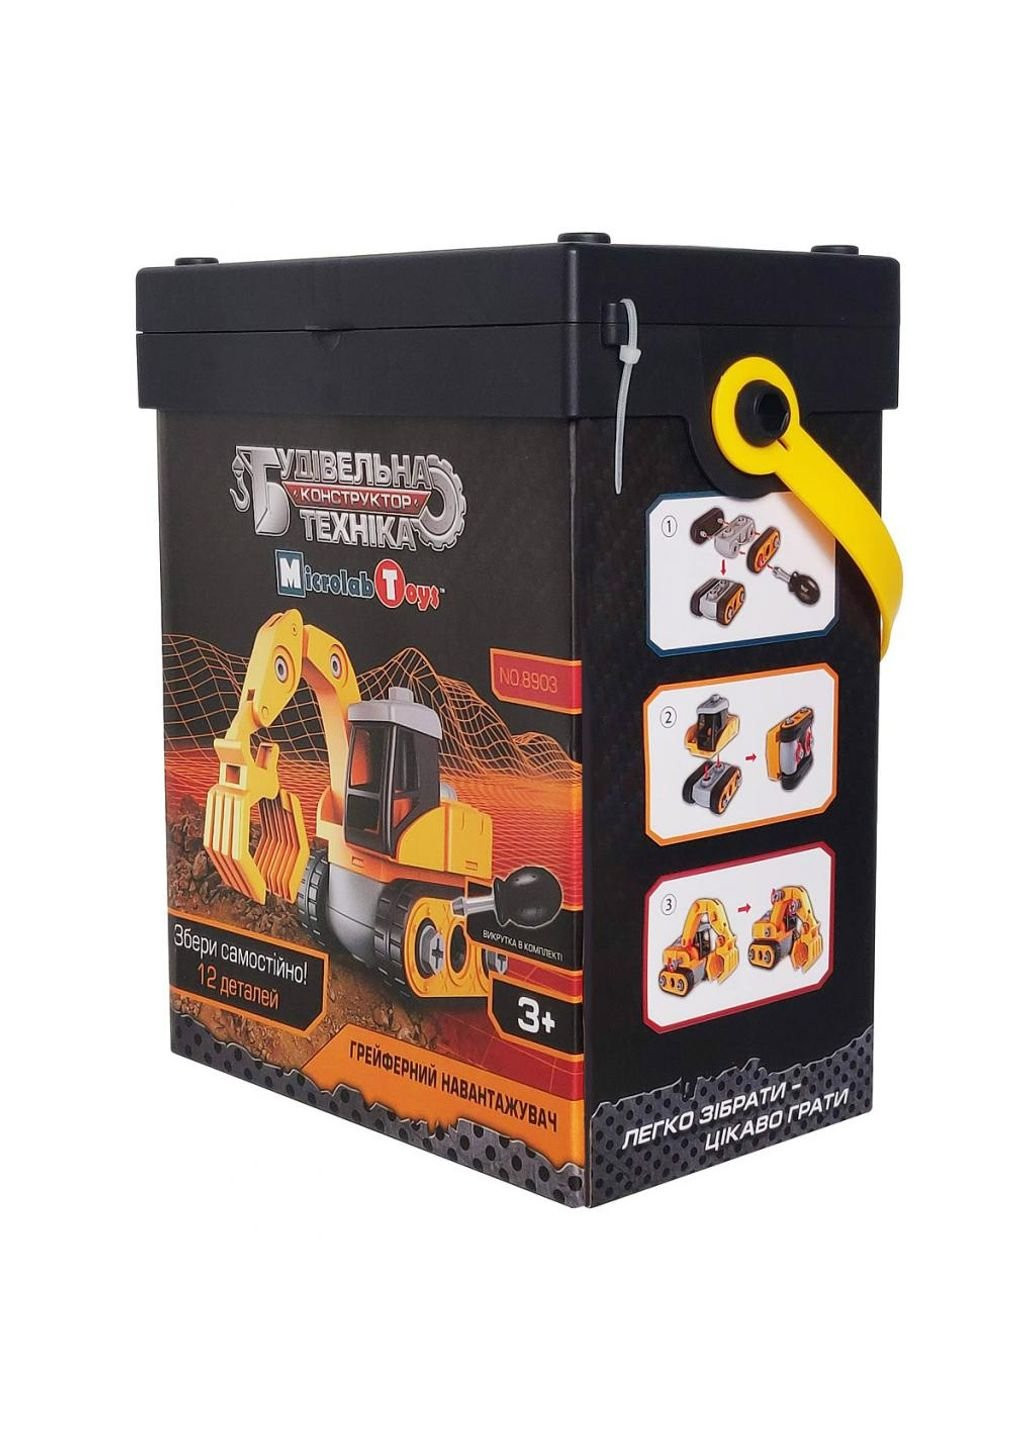 Конструктор (MT8903) Microlab Toys строительная техника - ковш погрузчик (249597022)